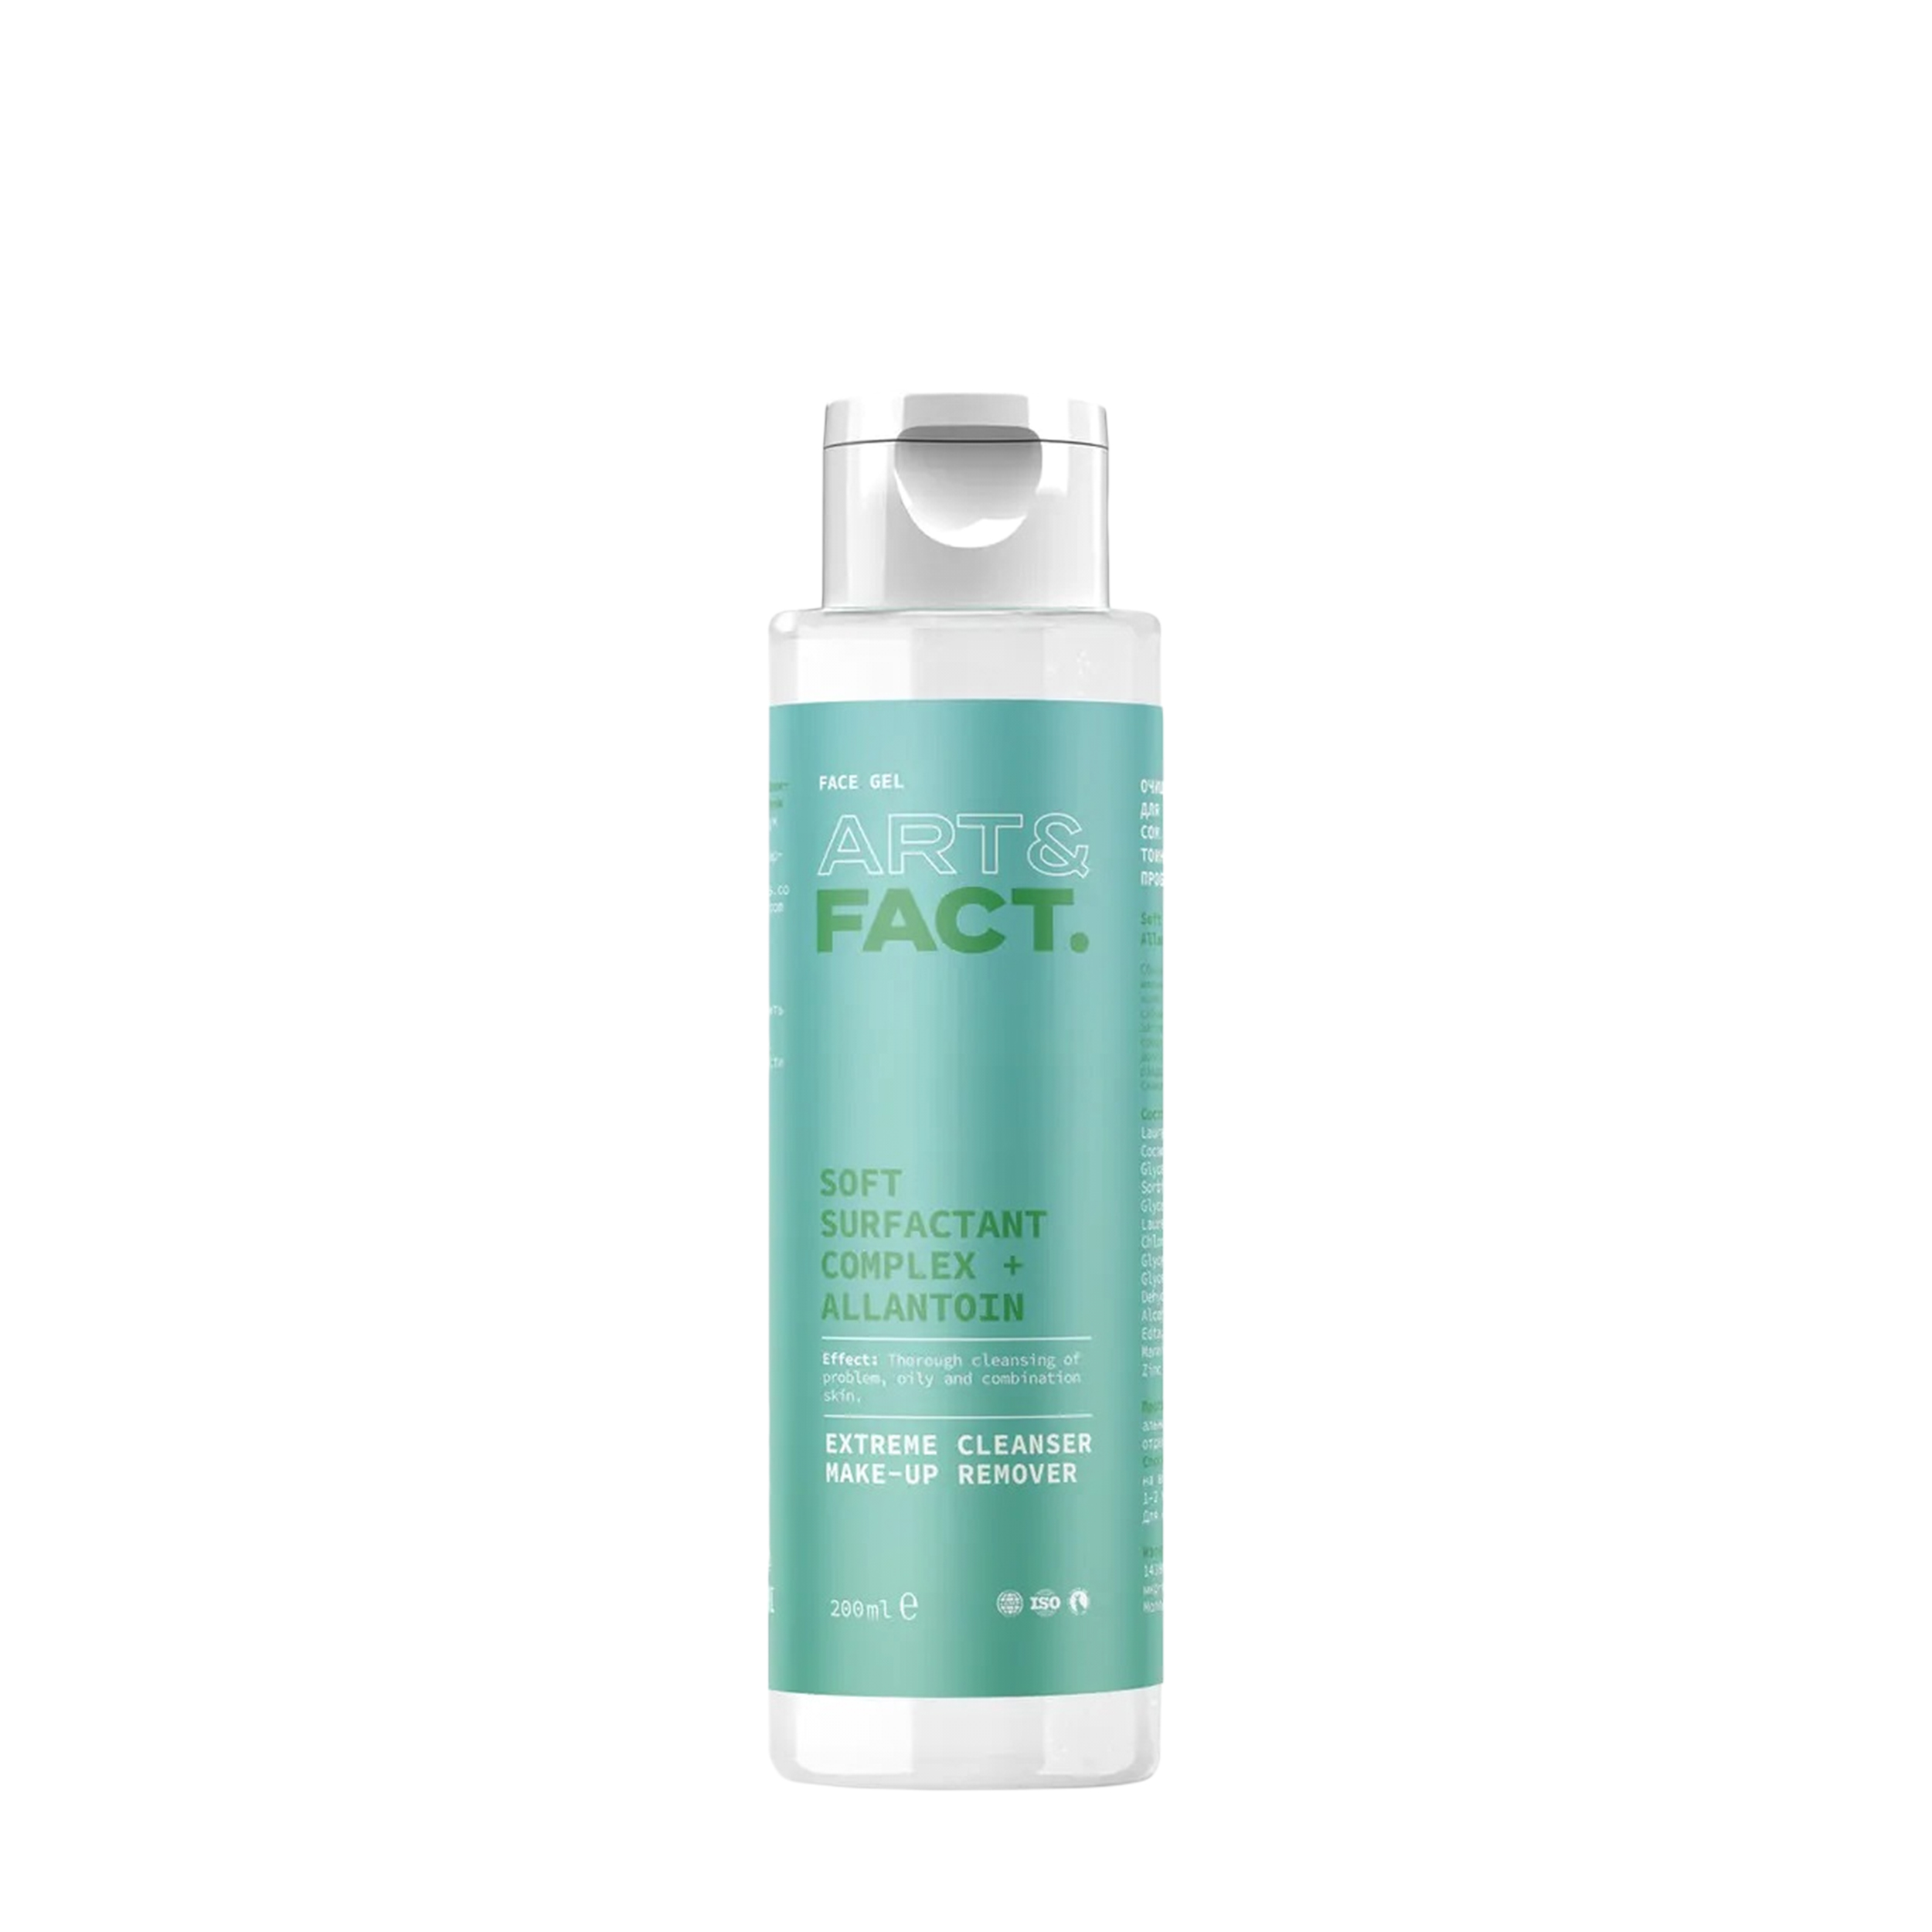 ART&FACT ART&FACT Успокаивающий гель для умывания для жирной и проблемной кожи Soft Surfactant Complex + Allantoin 200 мл